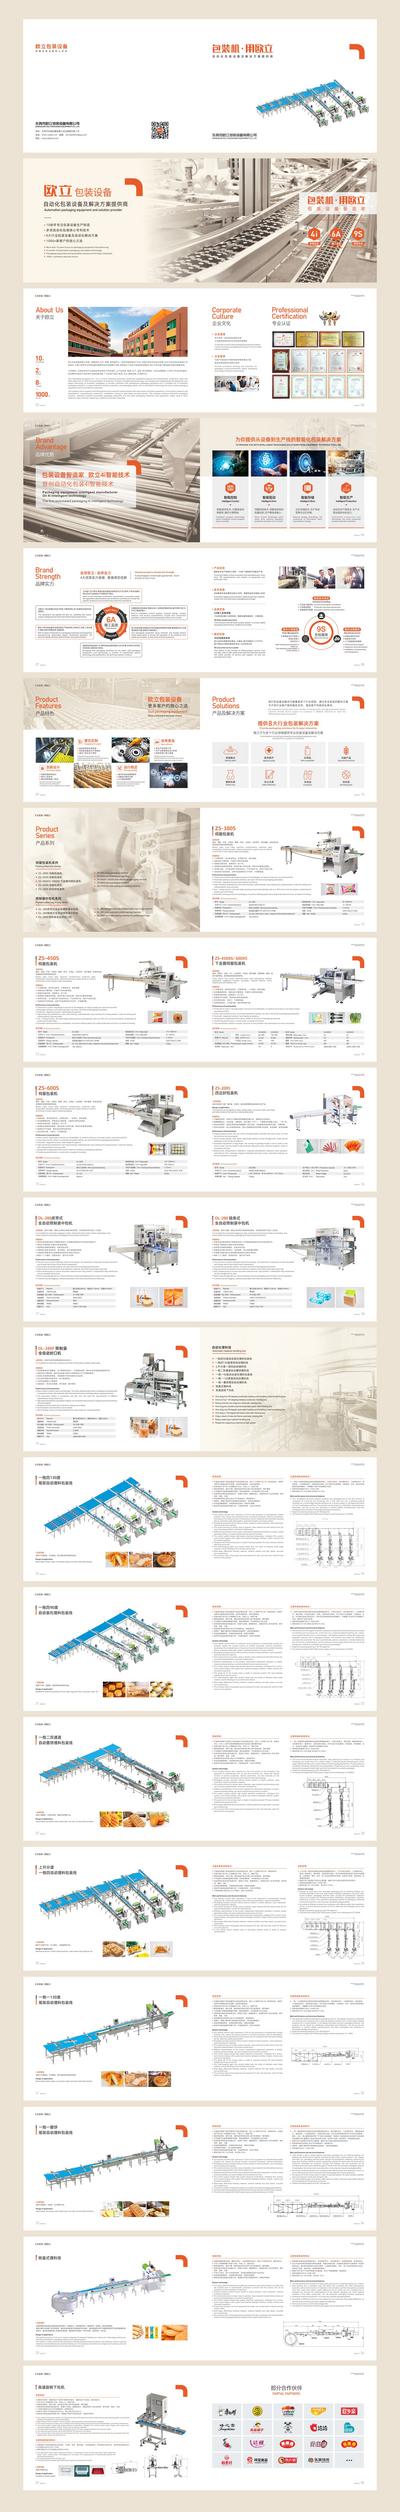 南门网 画册 宣传册 企业 公司 机械 五金 材料 排版 简约